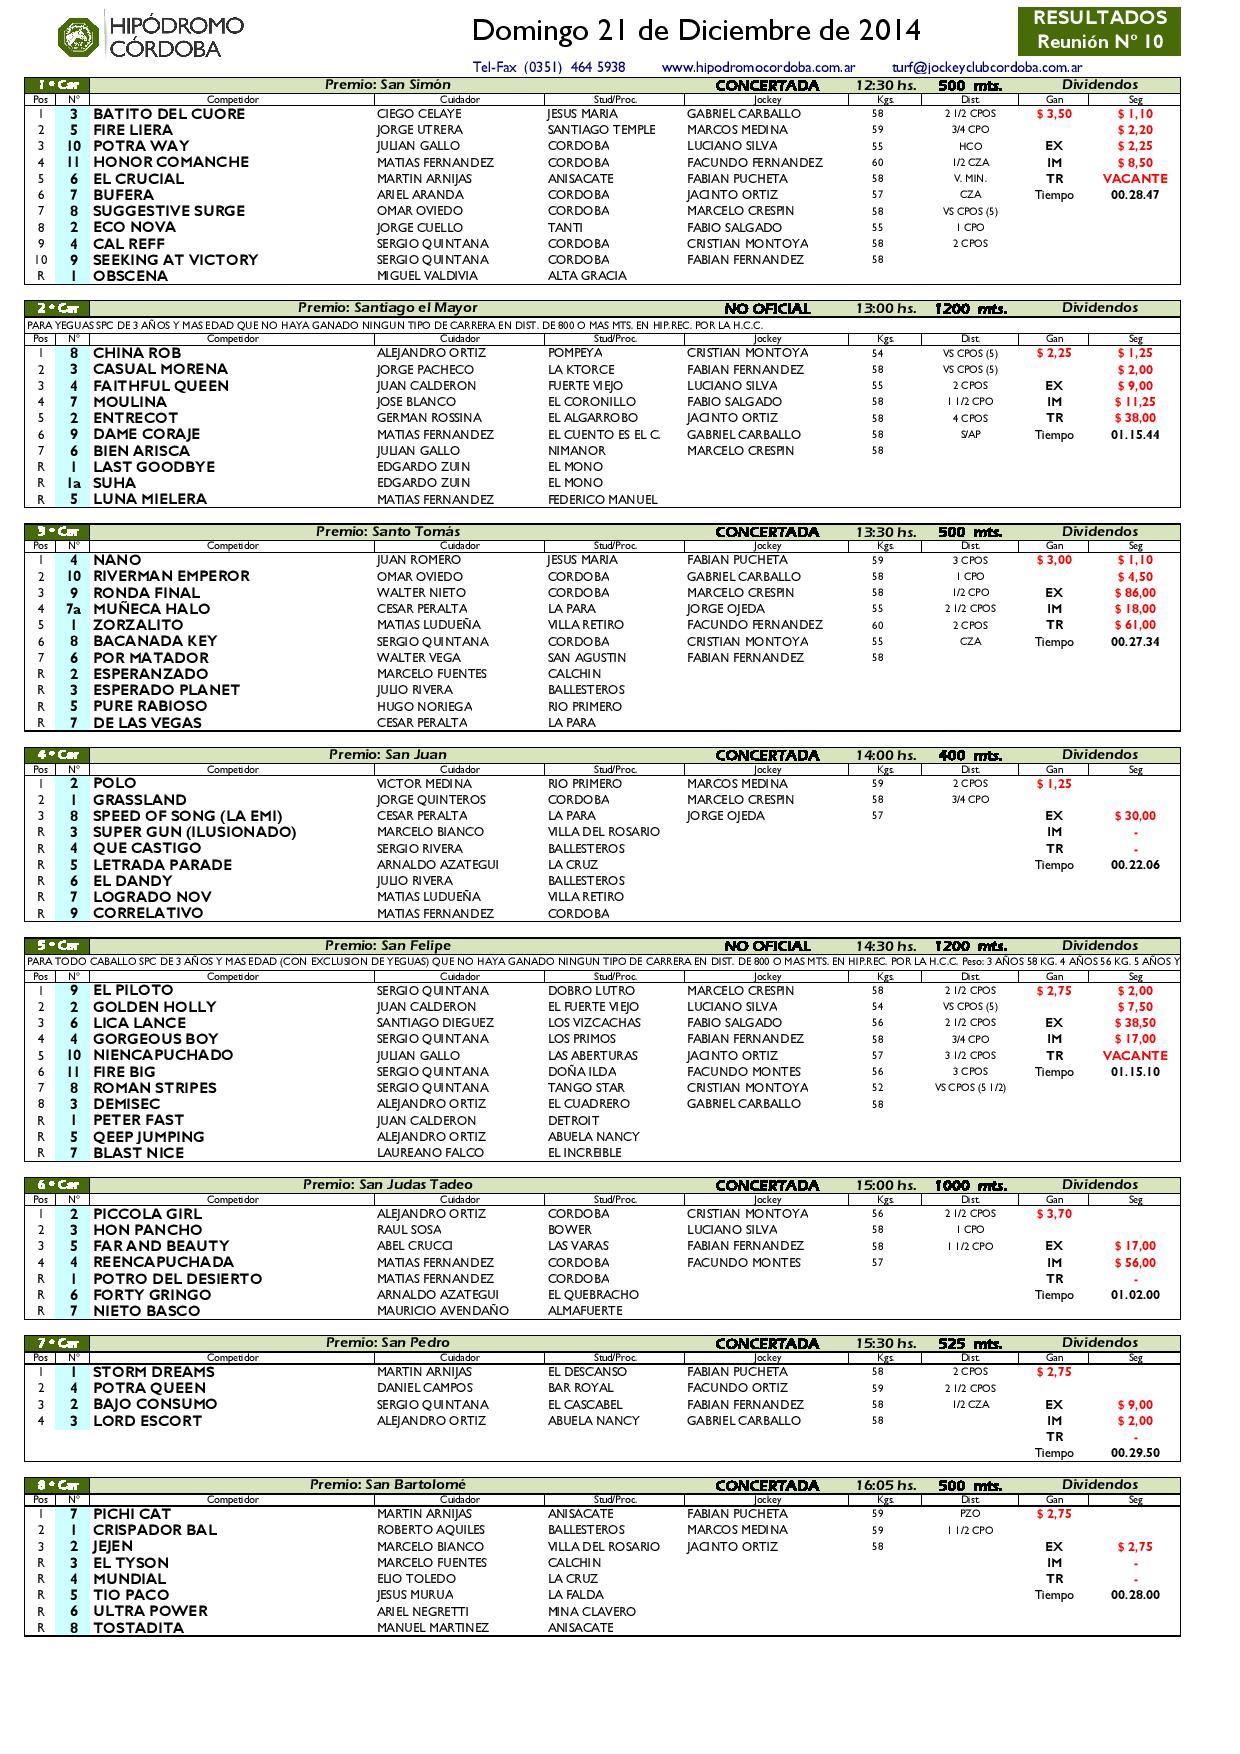 2014.12.21  R10 Resultados Diciembre-page-001